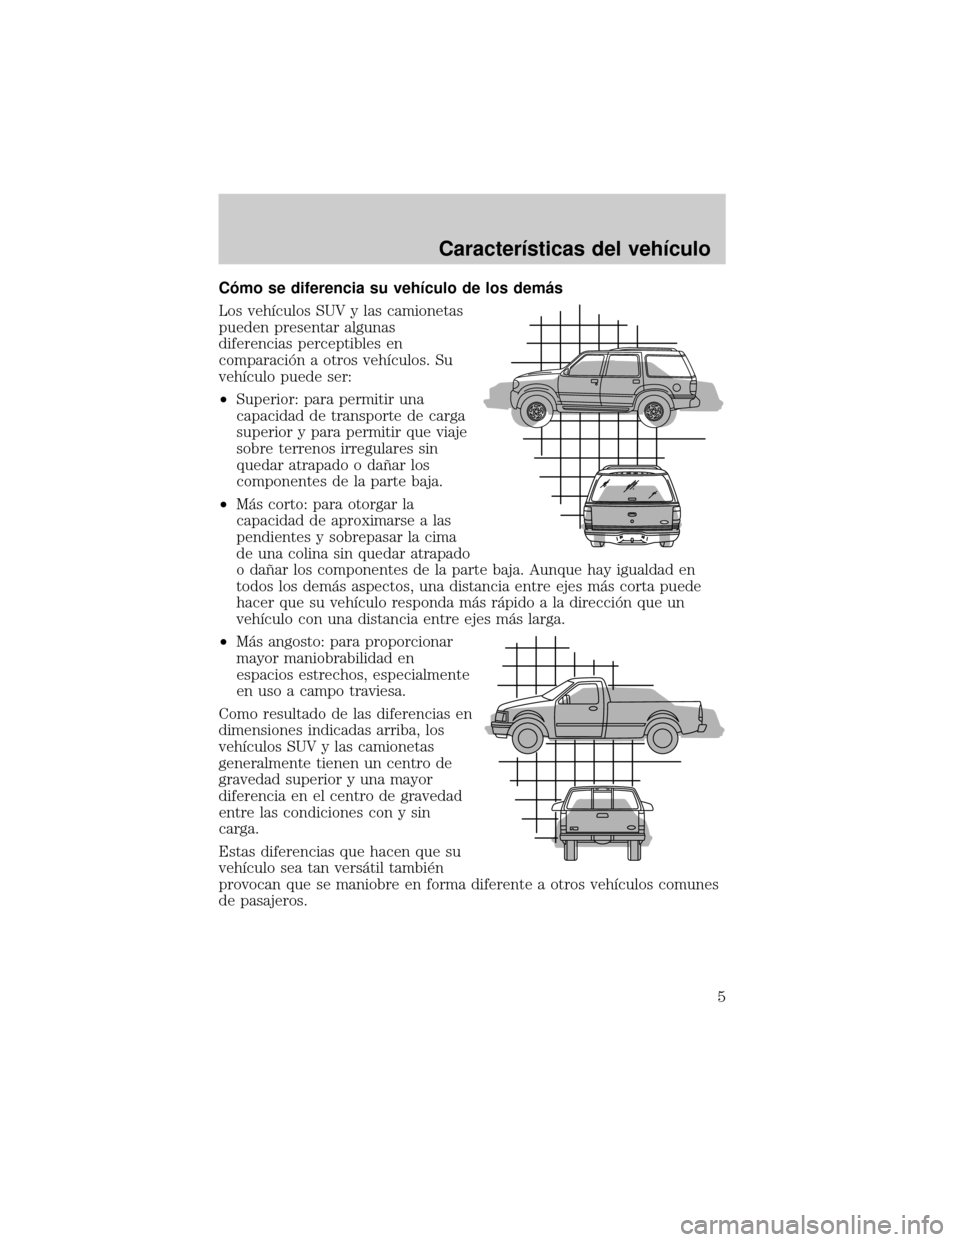 Mercury Mountaineer 2004  Manual de Usuario (in Spanish) Câmo se diferencia su vehÛculo de los demµs
Los vehÛculos SUV y las camionetas
pueden presentar algunas
diferencias perceptibles en
comparaciân a otros vehÛculos. Su
vehÛculo puede ser:
²Super